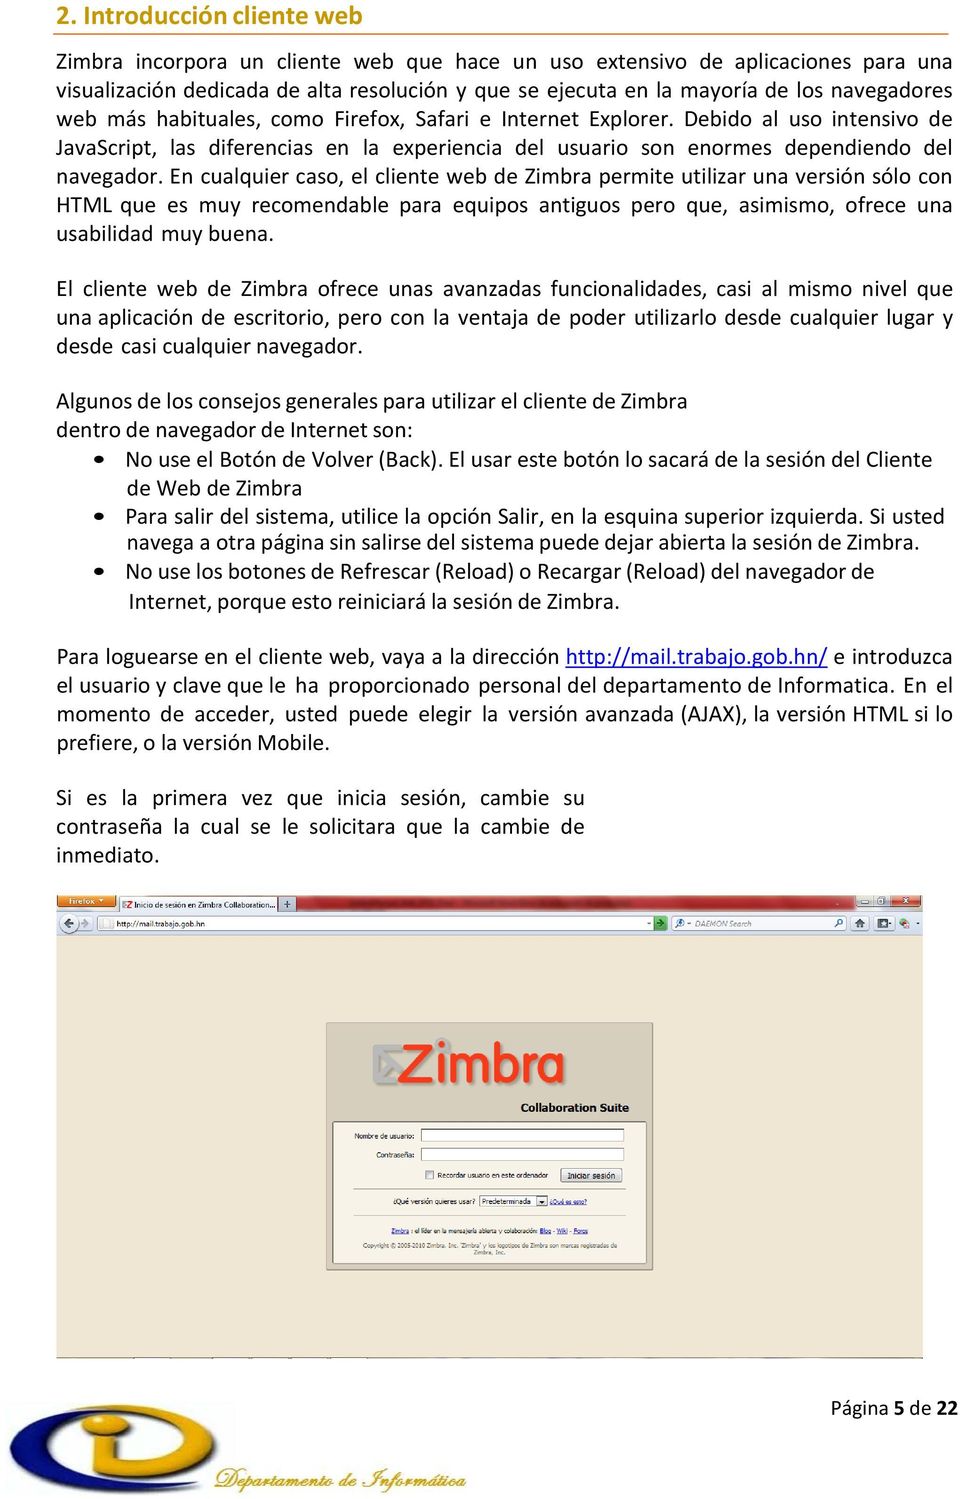 En cualquier caso, el cliente web de Zimbra permite utilizar una versión sólo con HTML que es muy recomendable para equipos antiguos pero que, asimismo, ofrece una usabilidad muy buena.